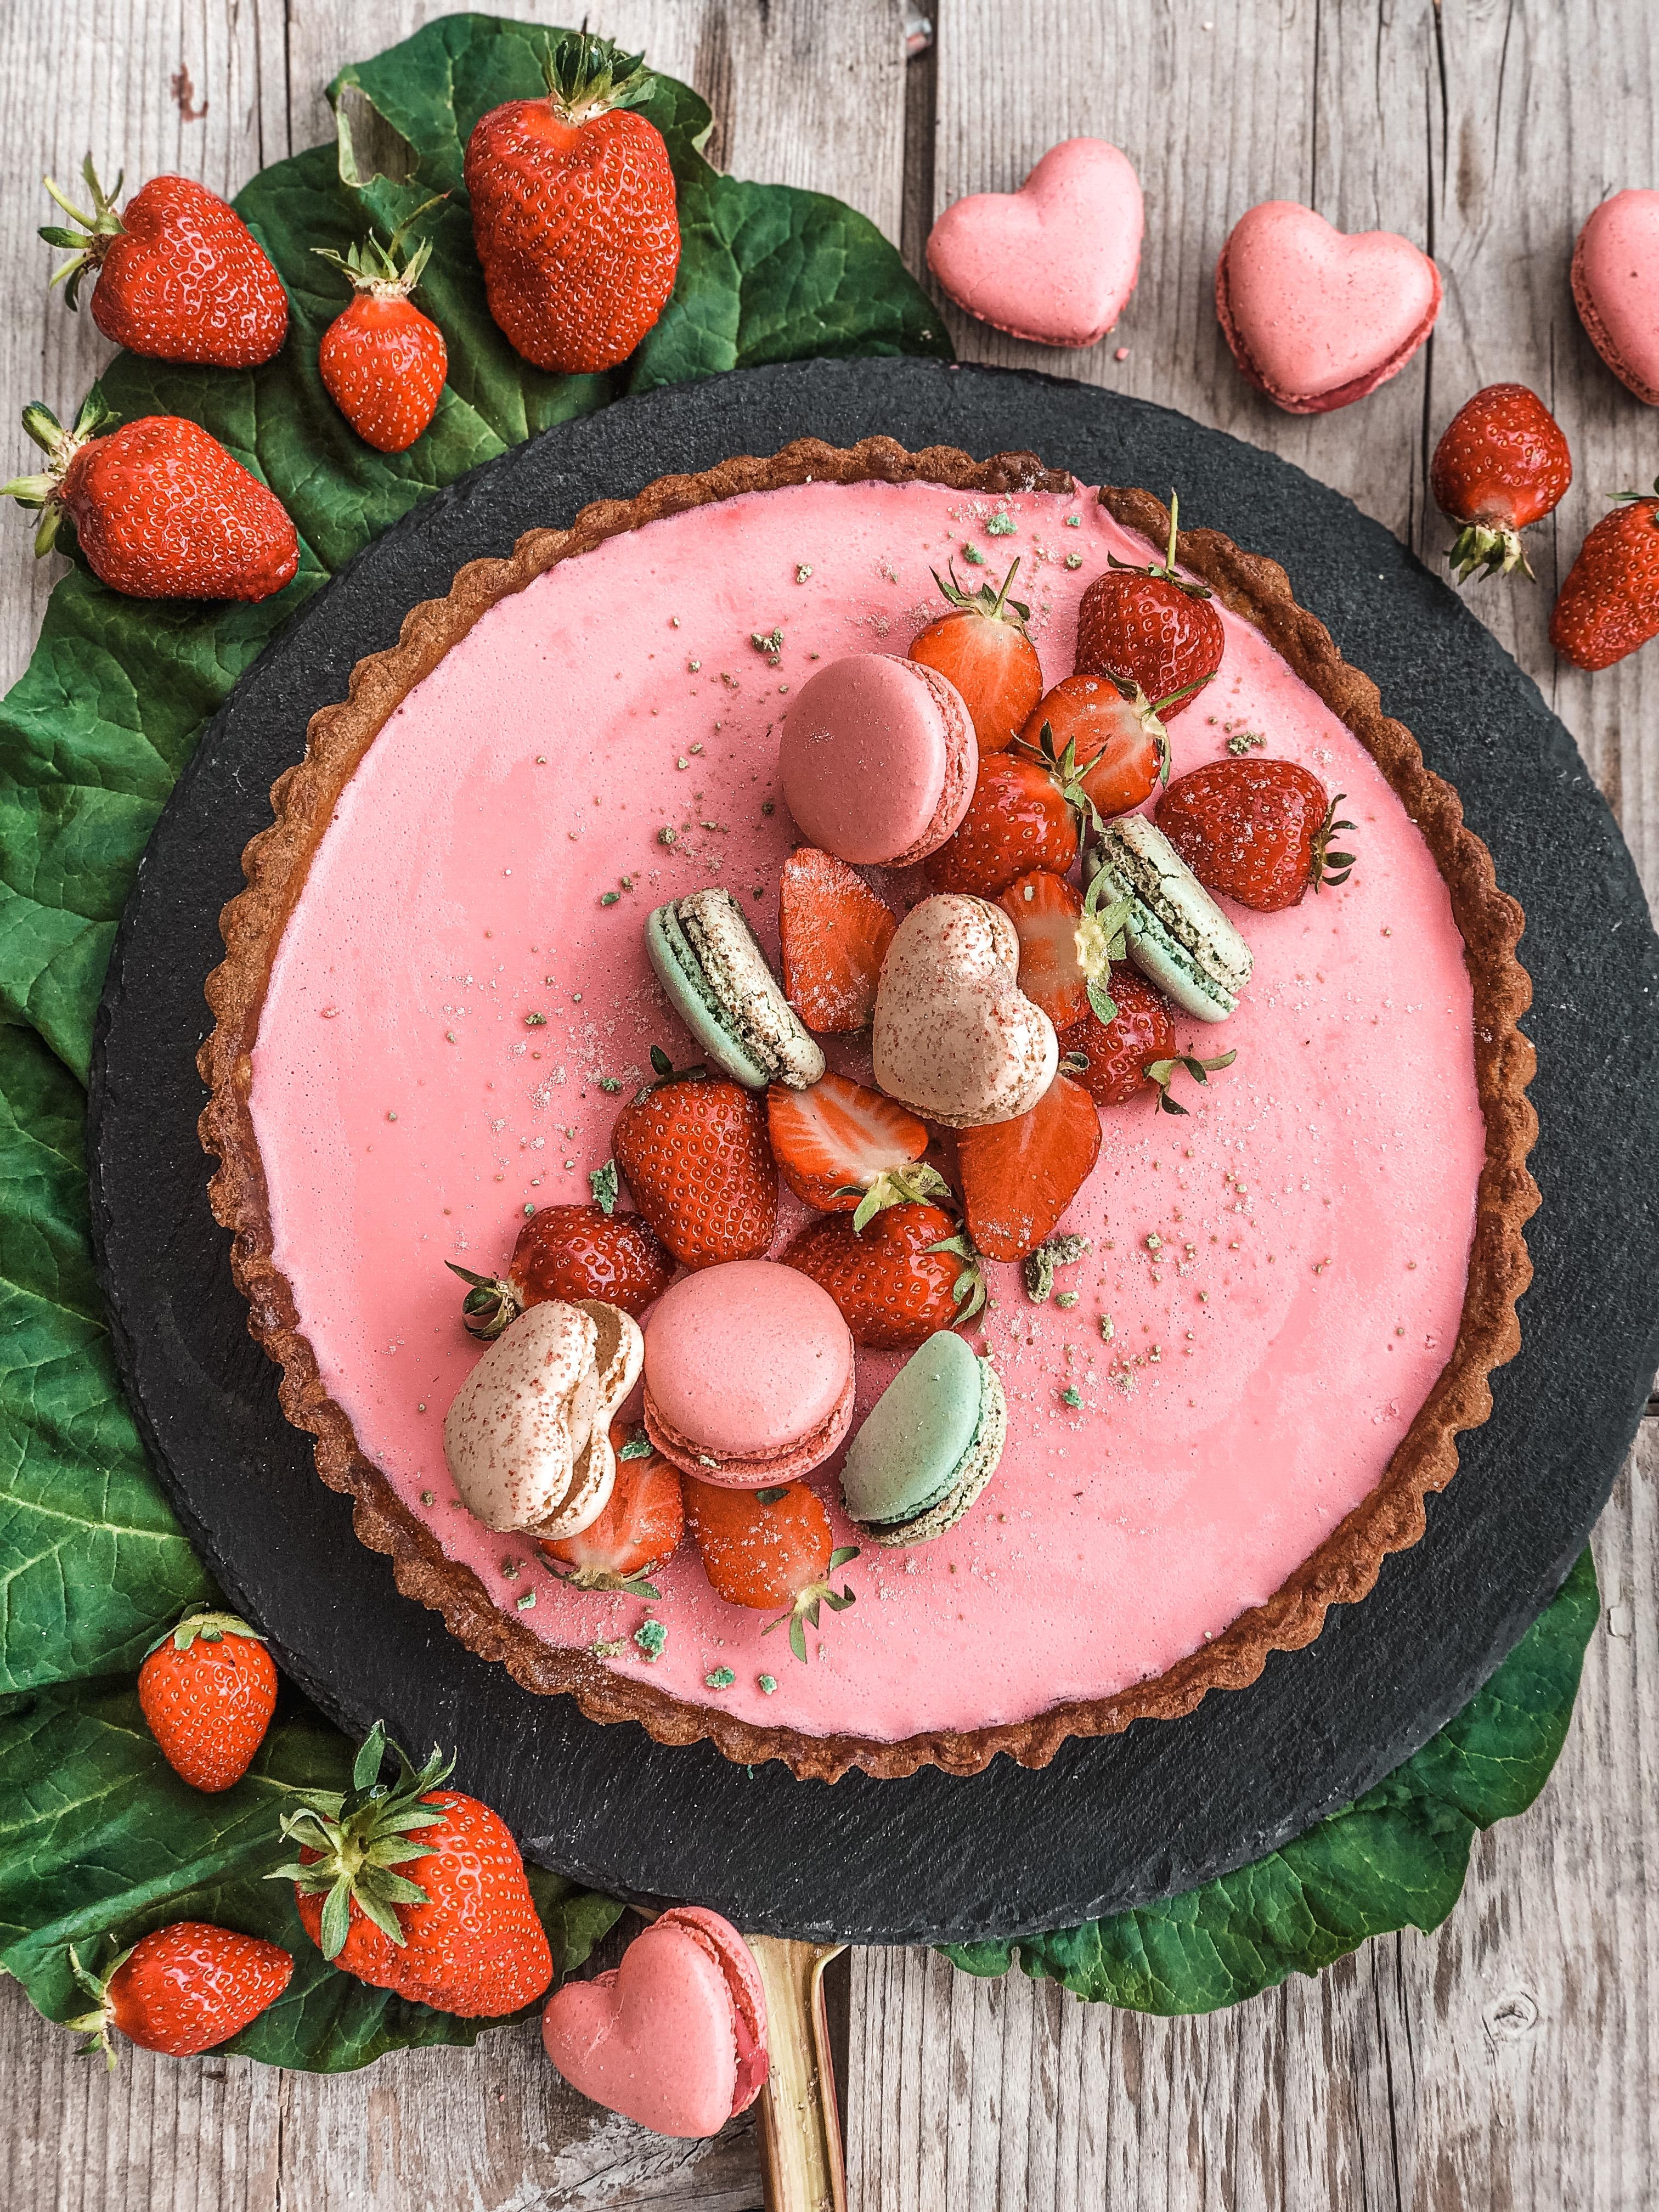 Kleine Inspiration zur Erdbeer- & Rhabarberzeit #foodinspi #cakelover #erdbeerzeit